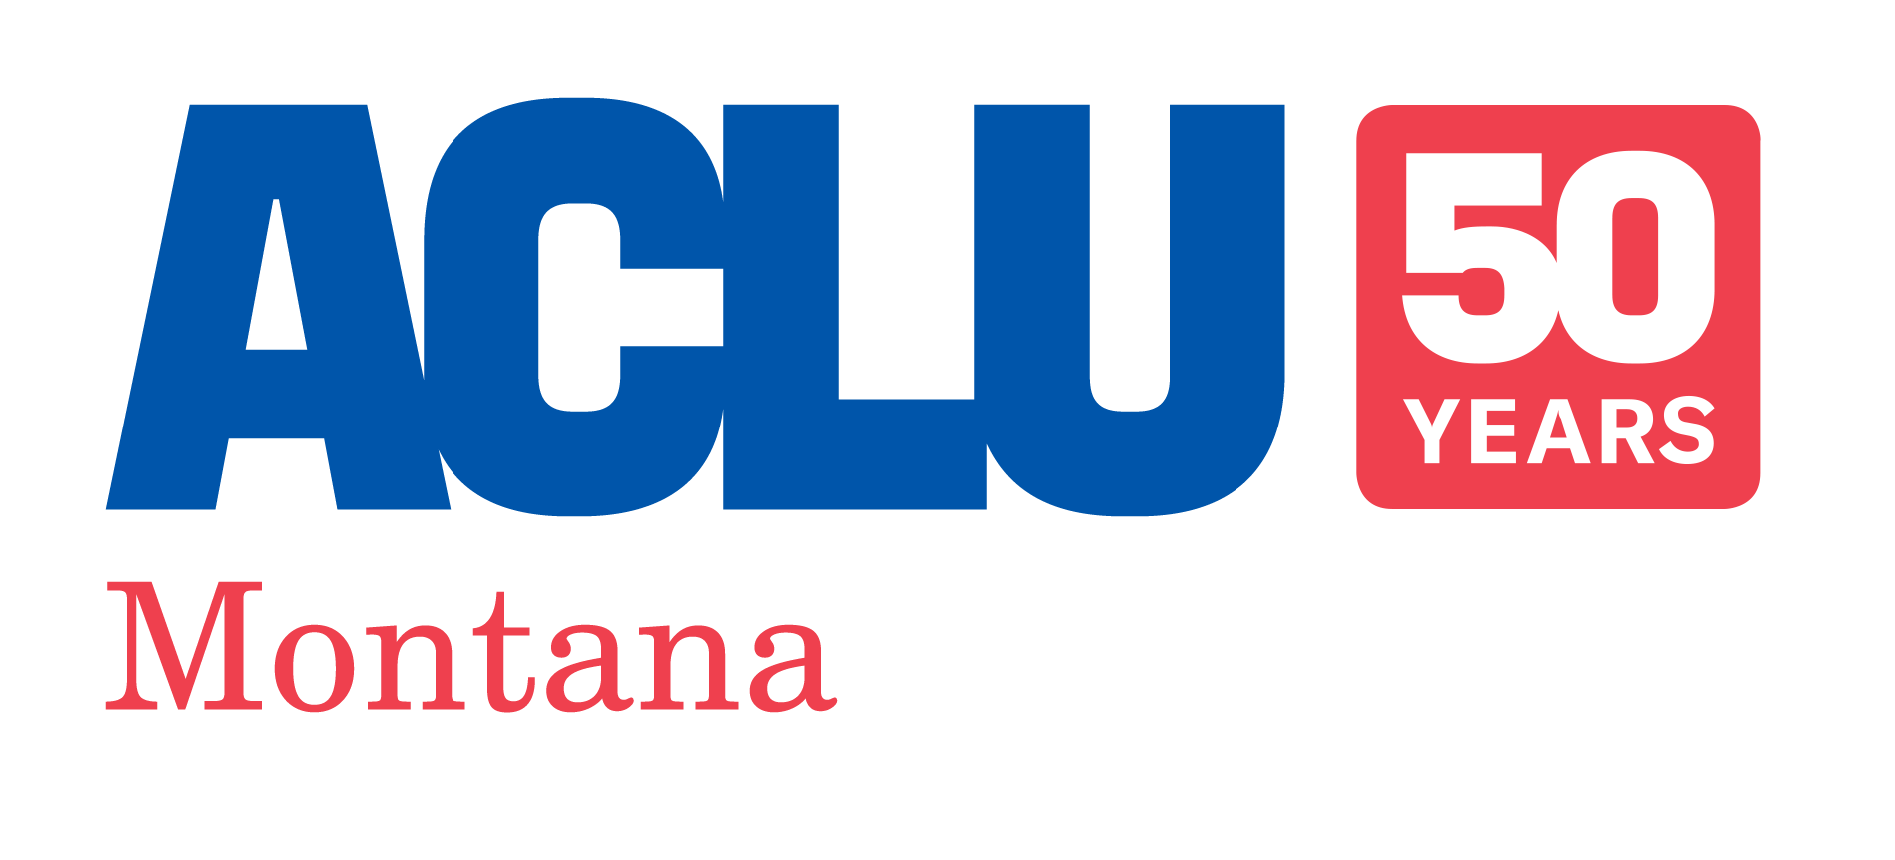 ACLU of Montana 50 years